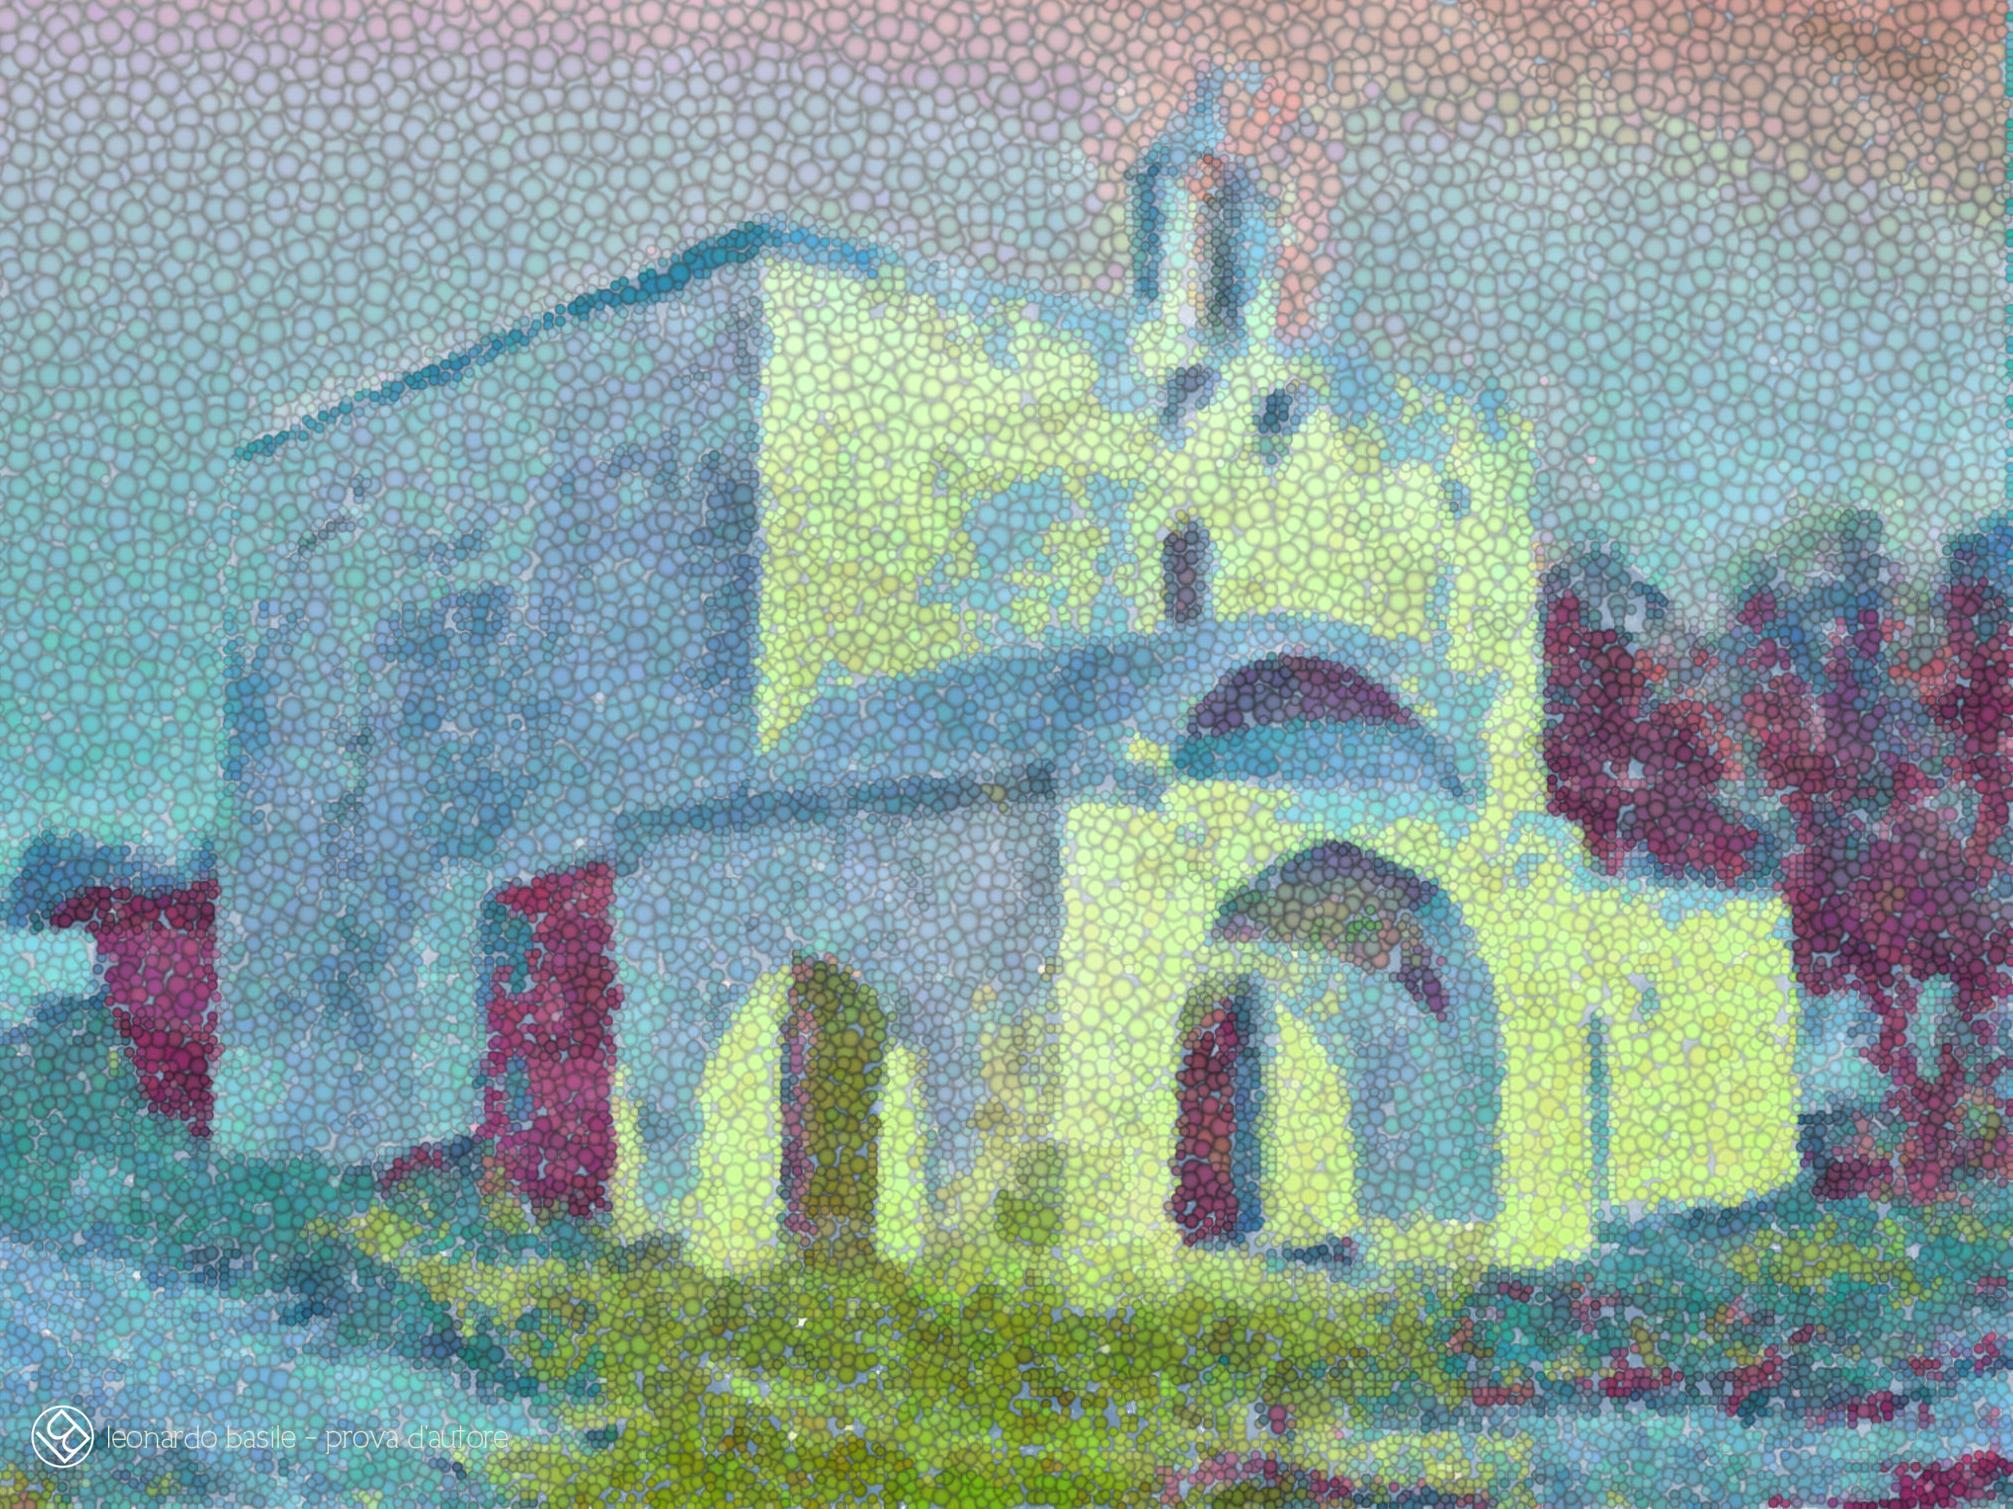 Elaborazione grafica da una fotografia della Chiesa medievale dell'Annunziata di Bari/S.Spirito- 7